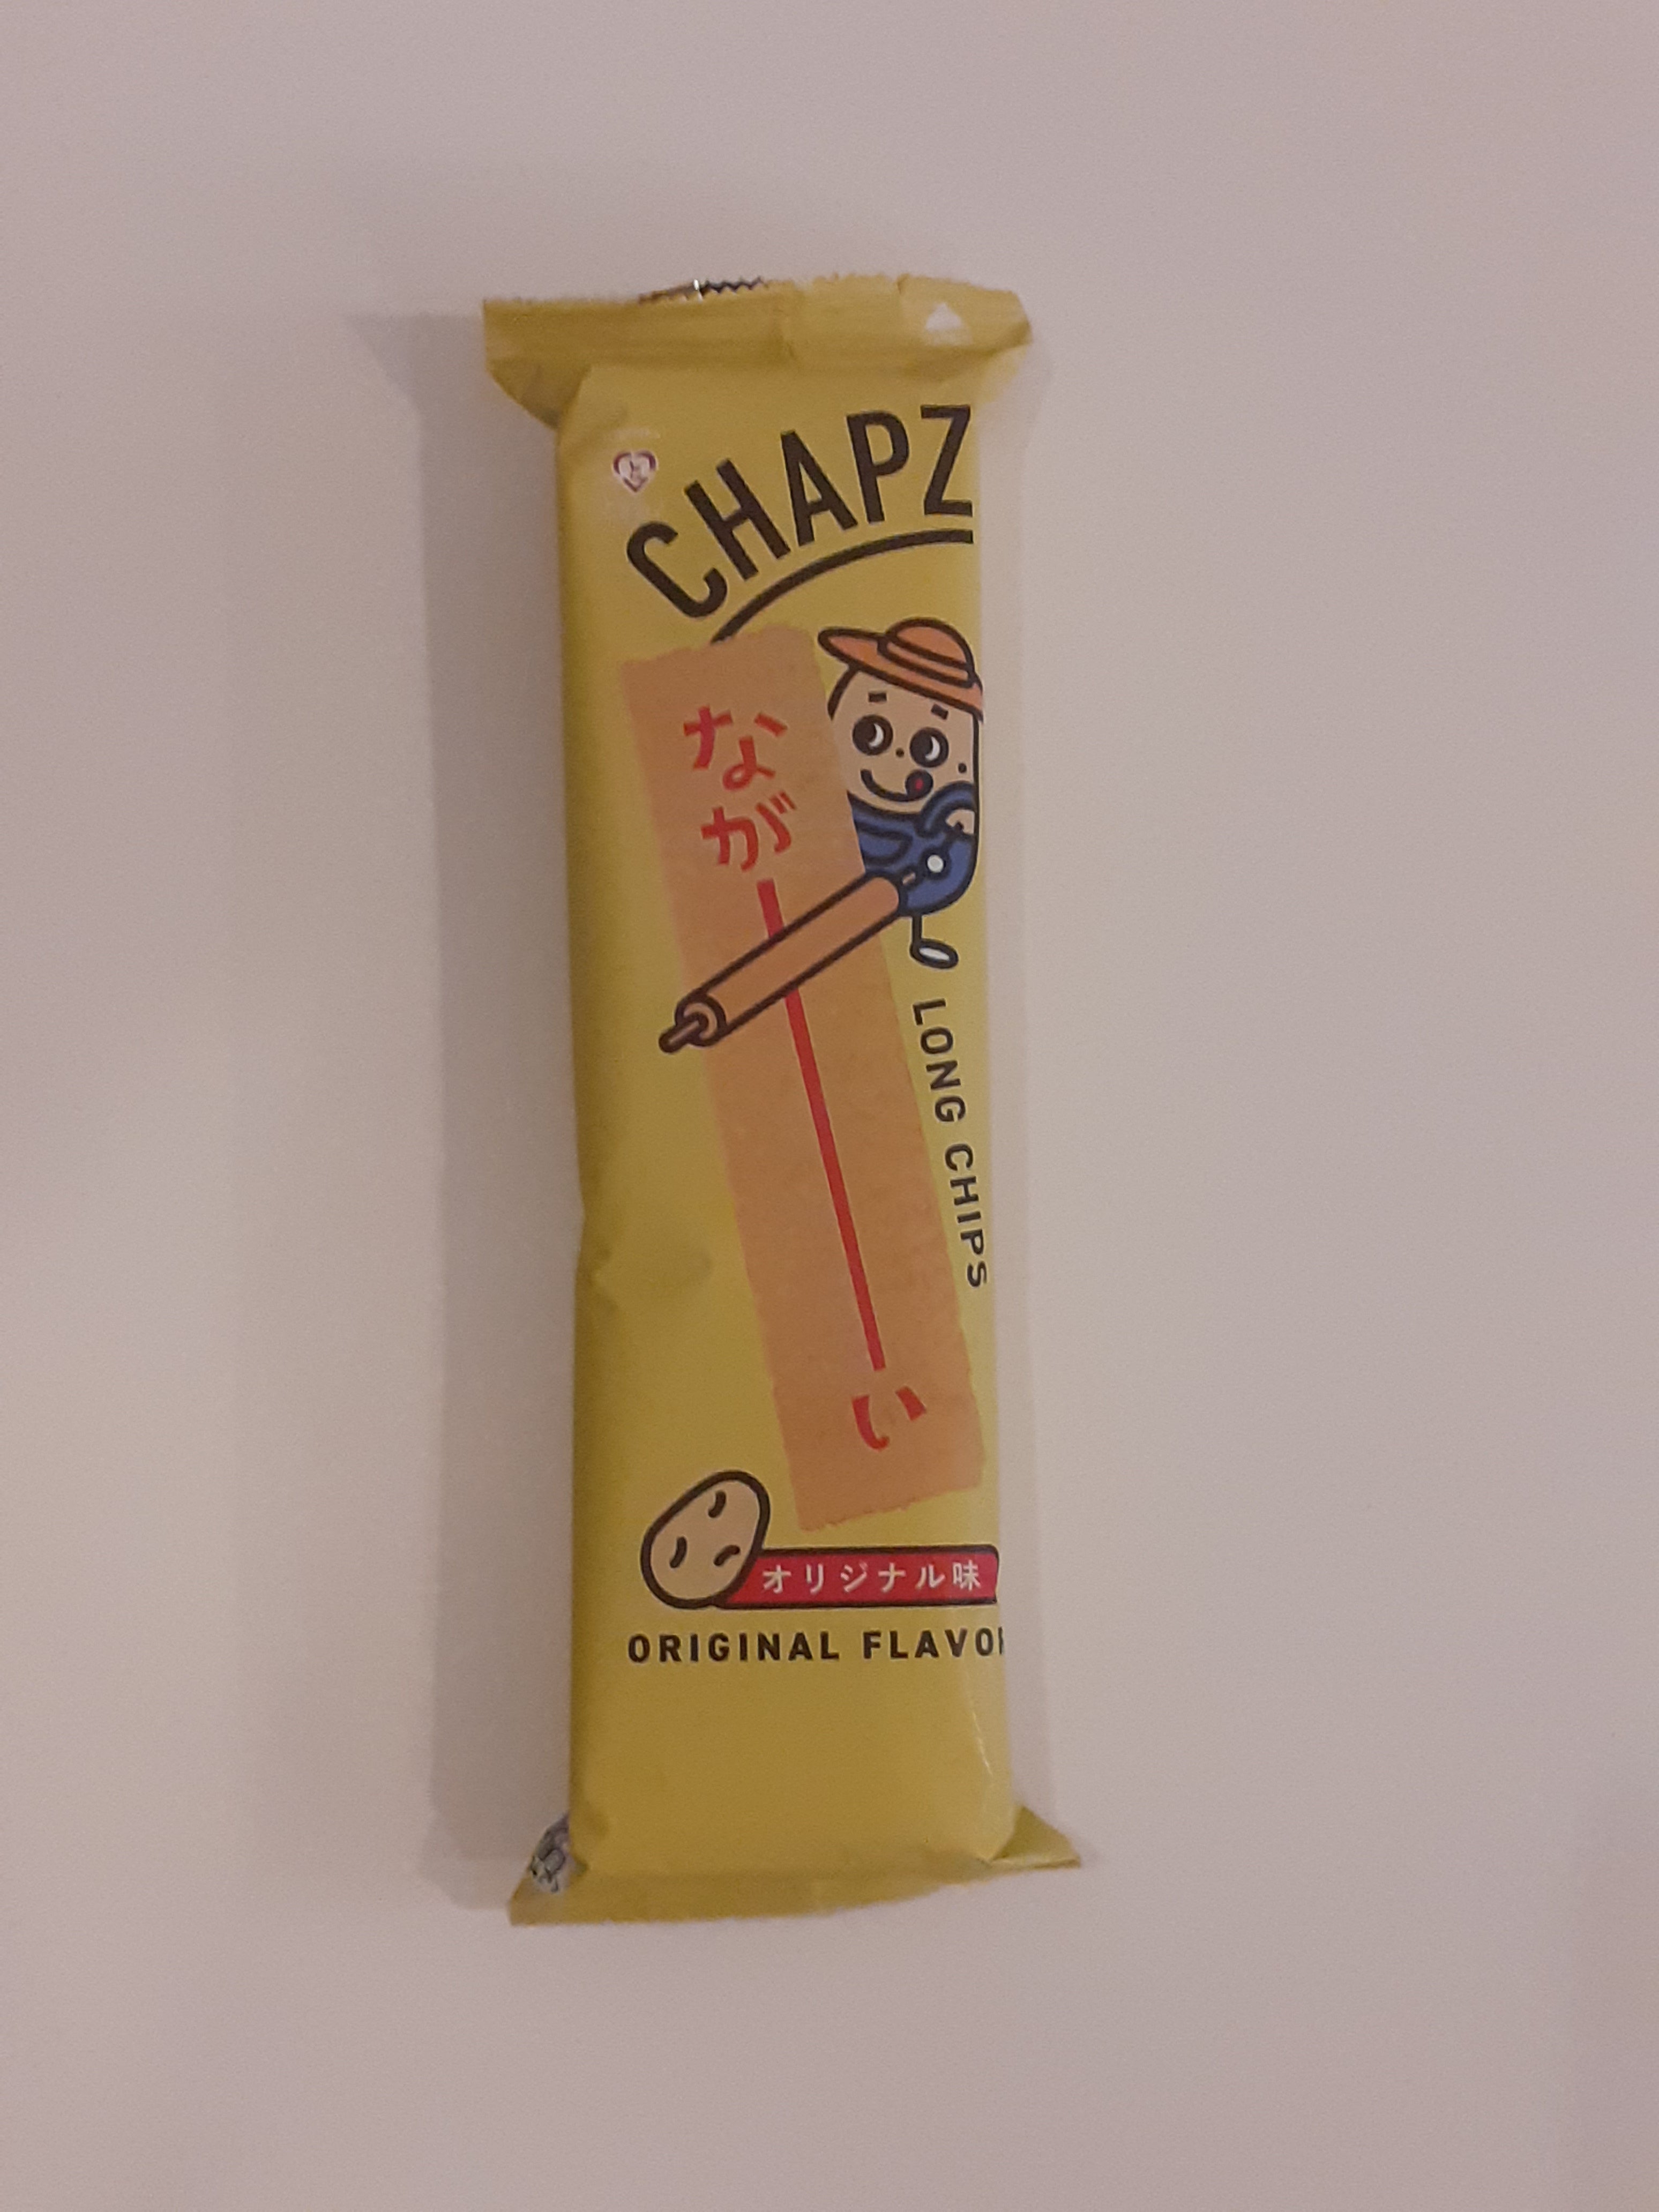 Chapz Long Chips